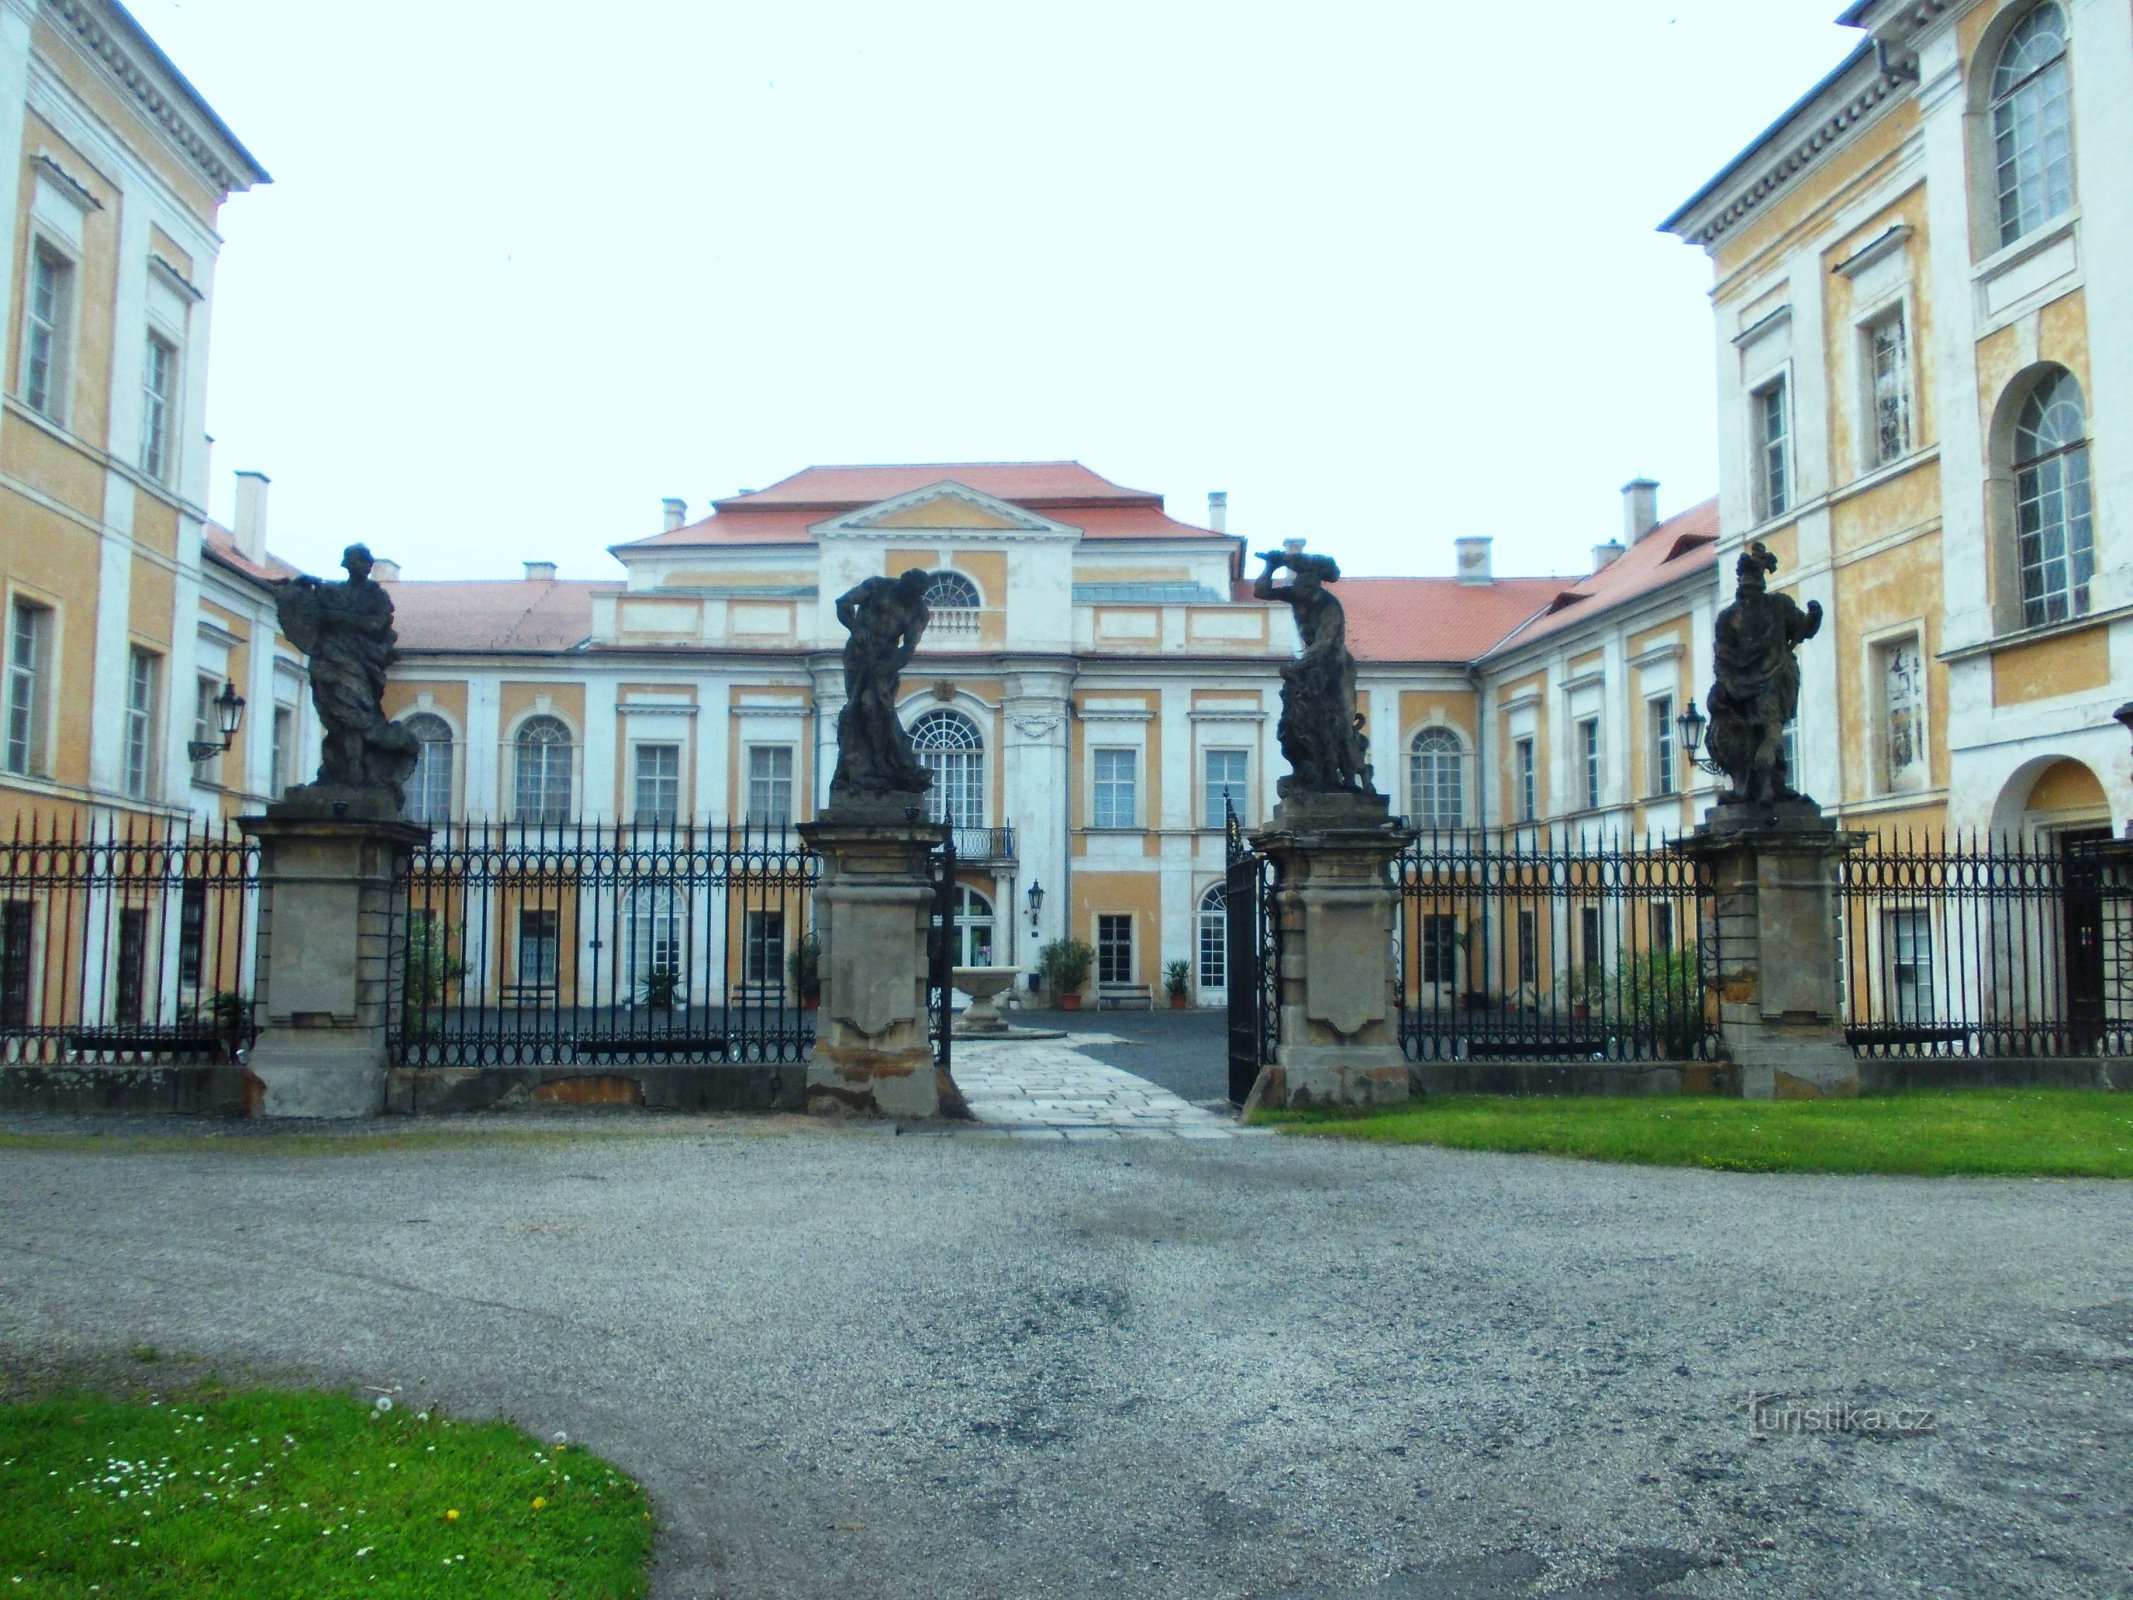 城堡入口处有 4 座密涅瓦、玛尔斯和两次赫拉克勒斯雕像，由布劳恩大师创作